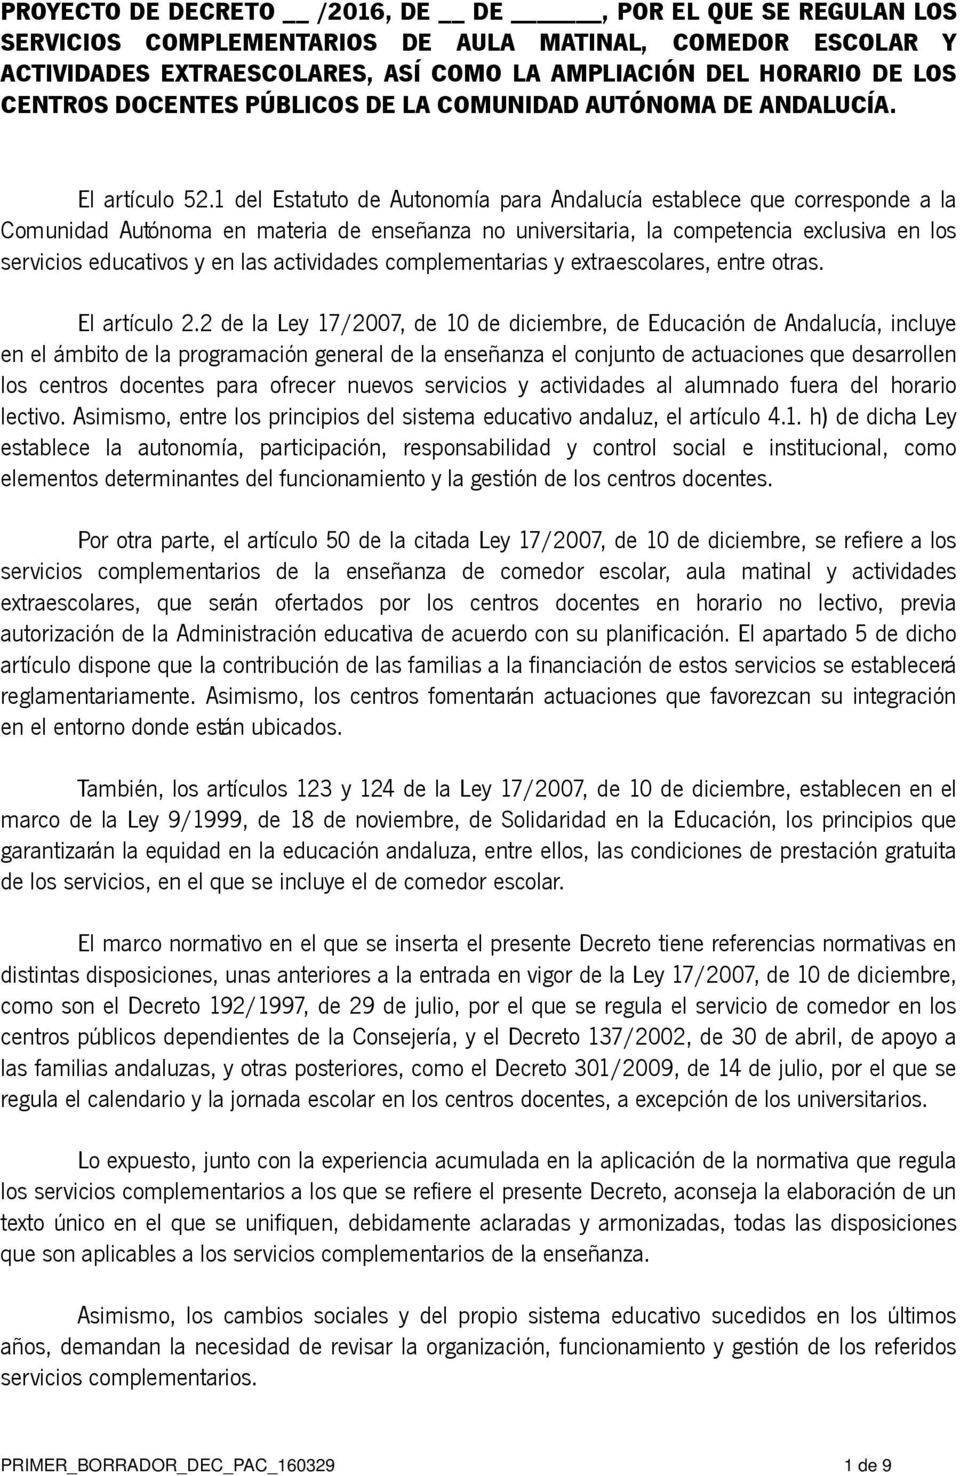 1 del Estatuto de Autonomía para Andalucía establece que corresponde a la Comunidad Autónoma en materia de enseñanza no universitaria, la competencia exclusiva en los servicios educativos y en las